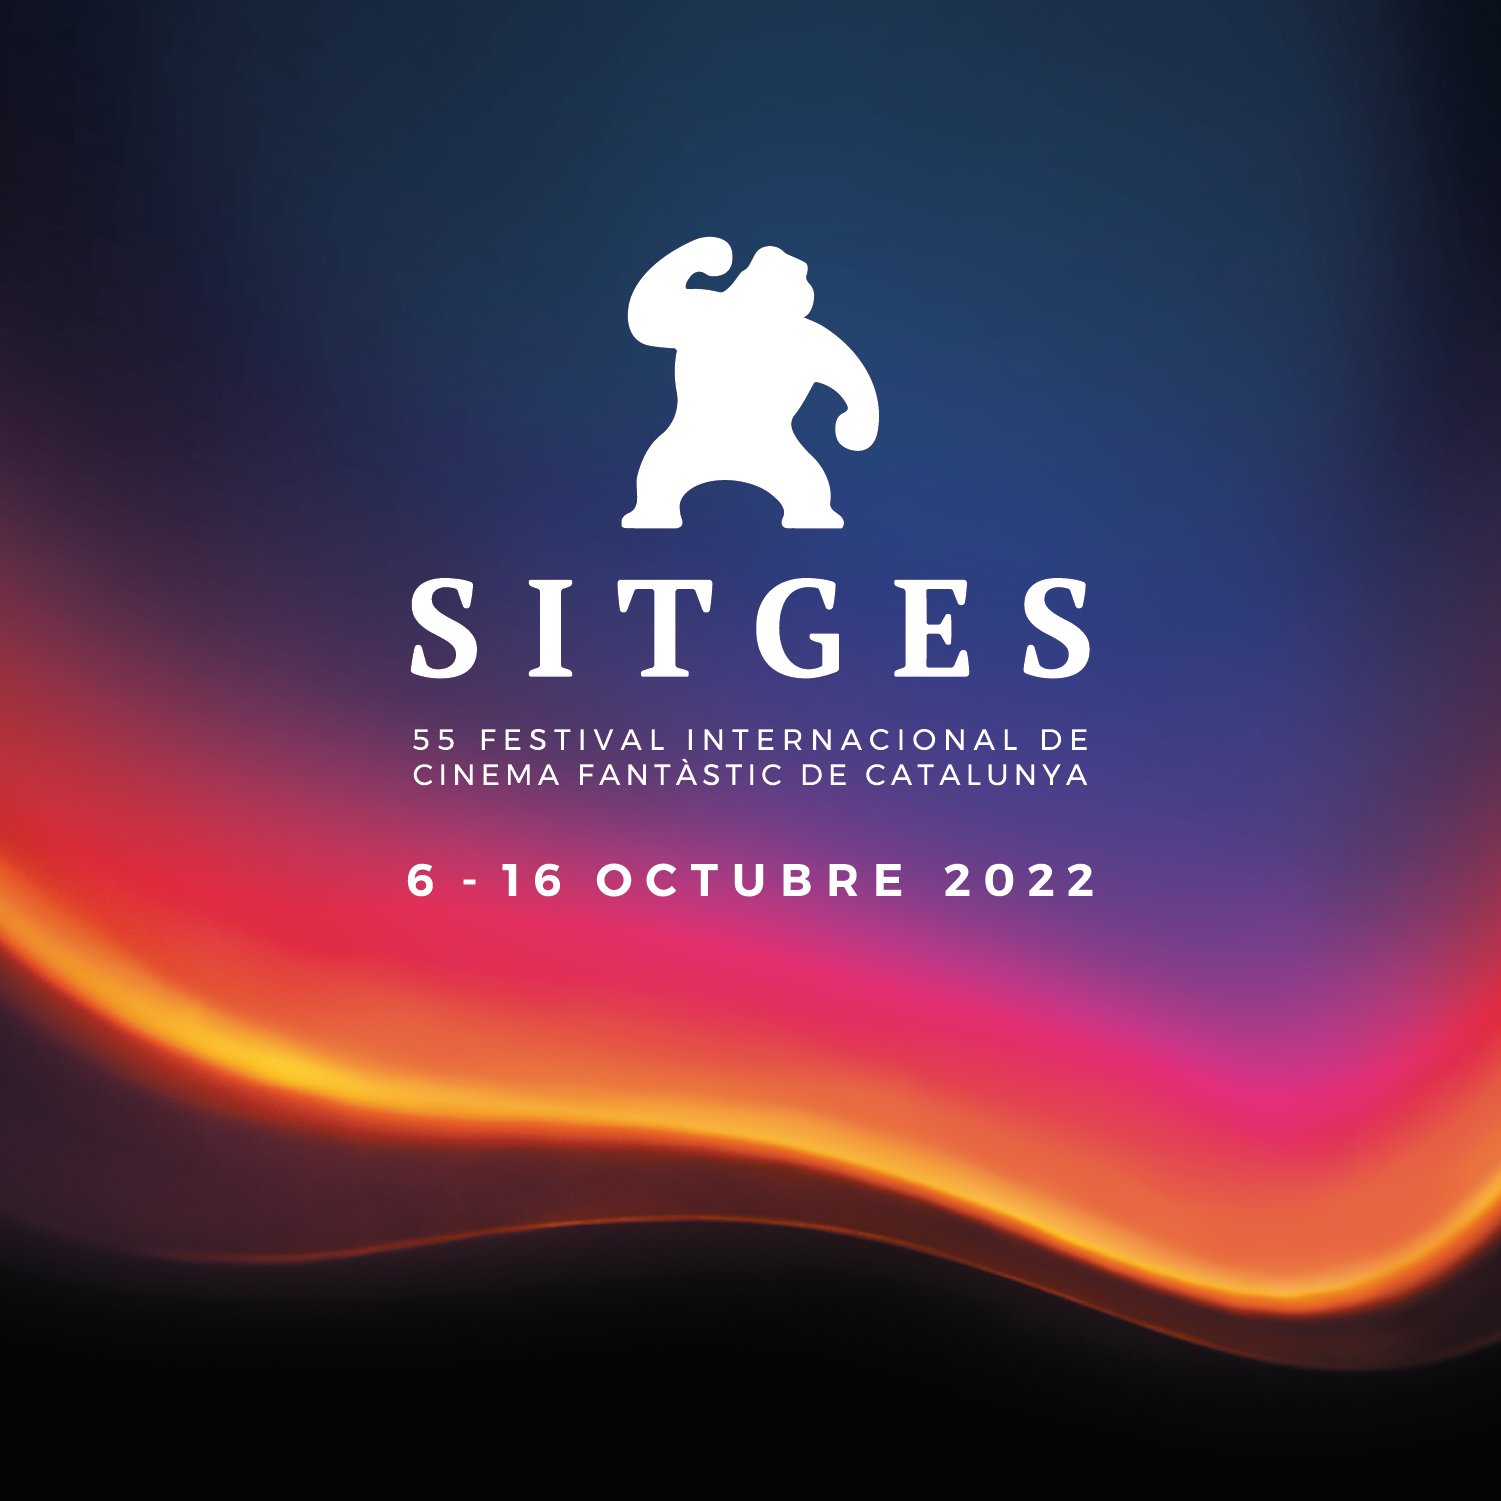 Palmarés del Festival de Sitges 2022: todos los premios, película ganadora y cineastas galardonados